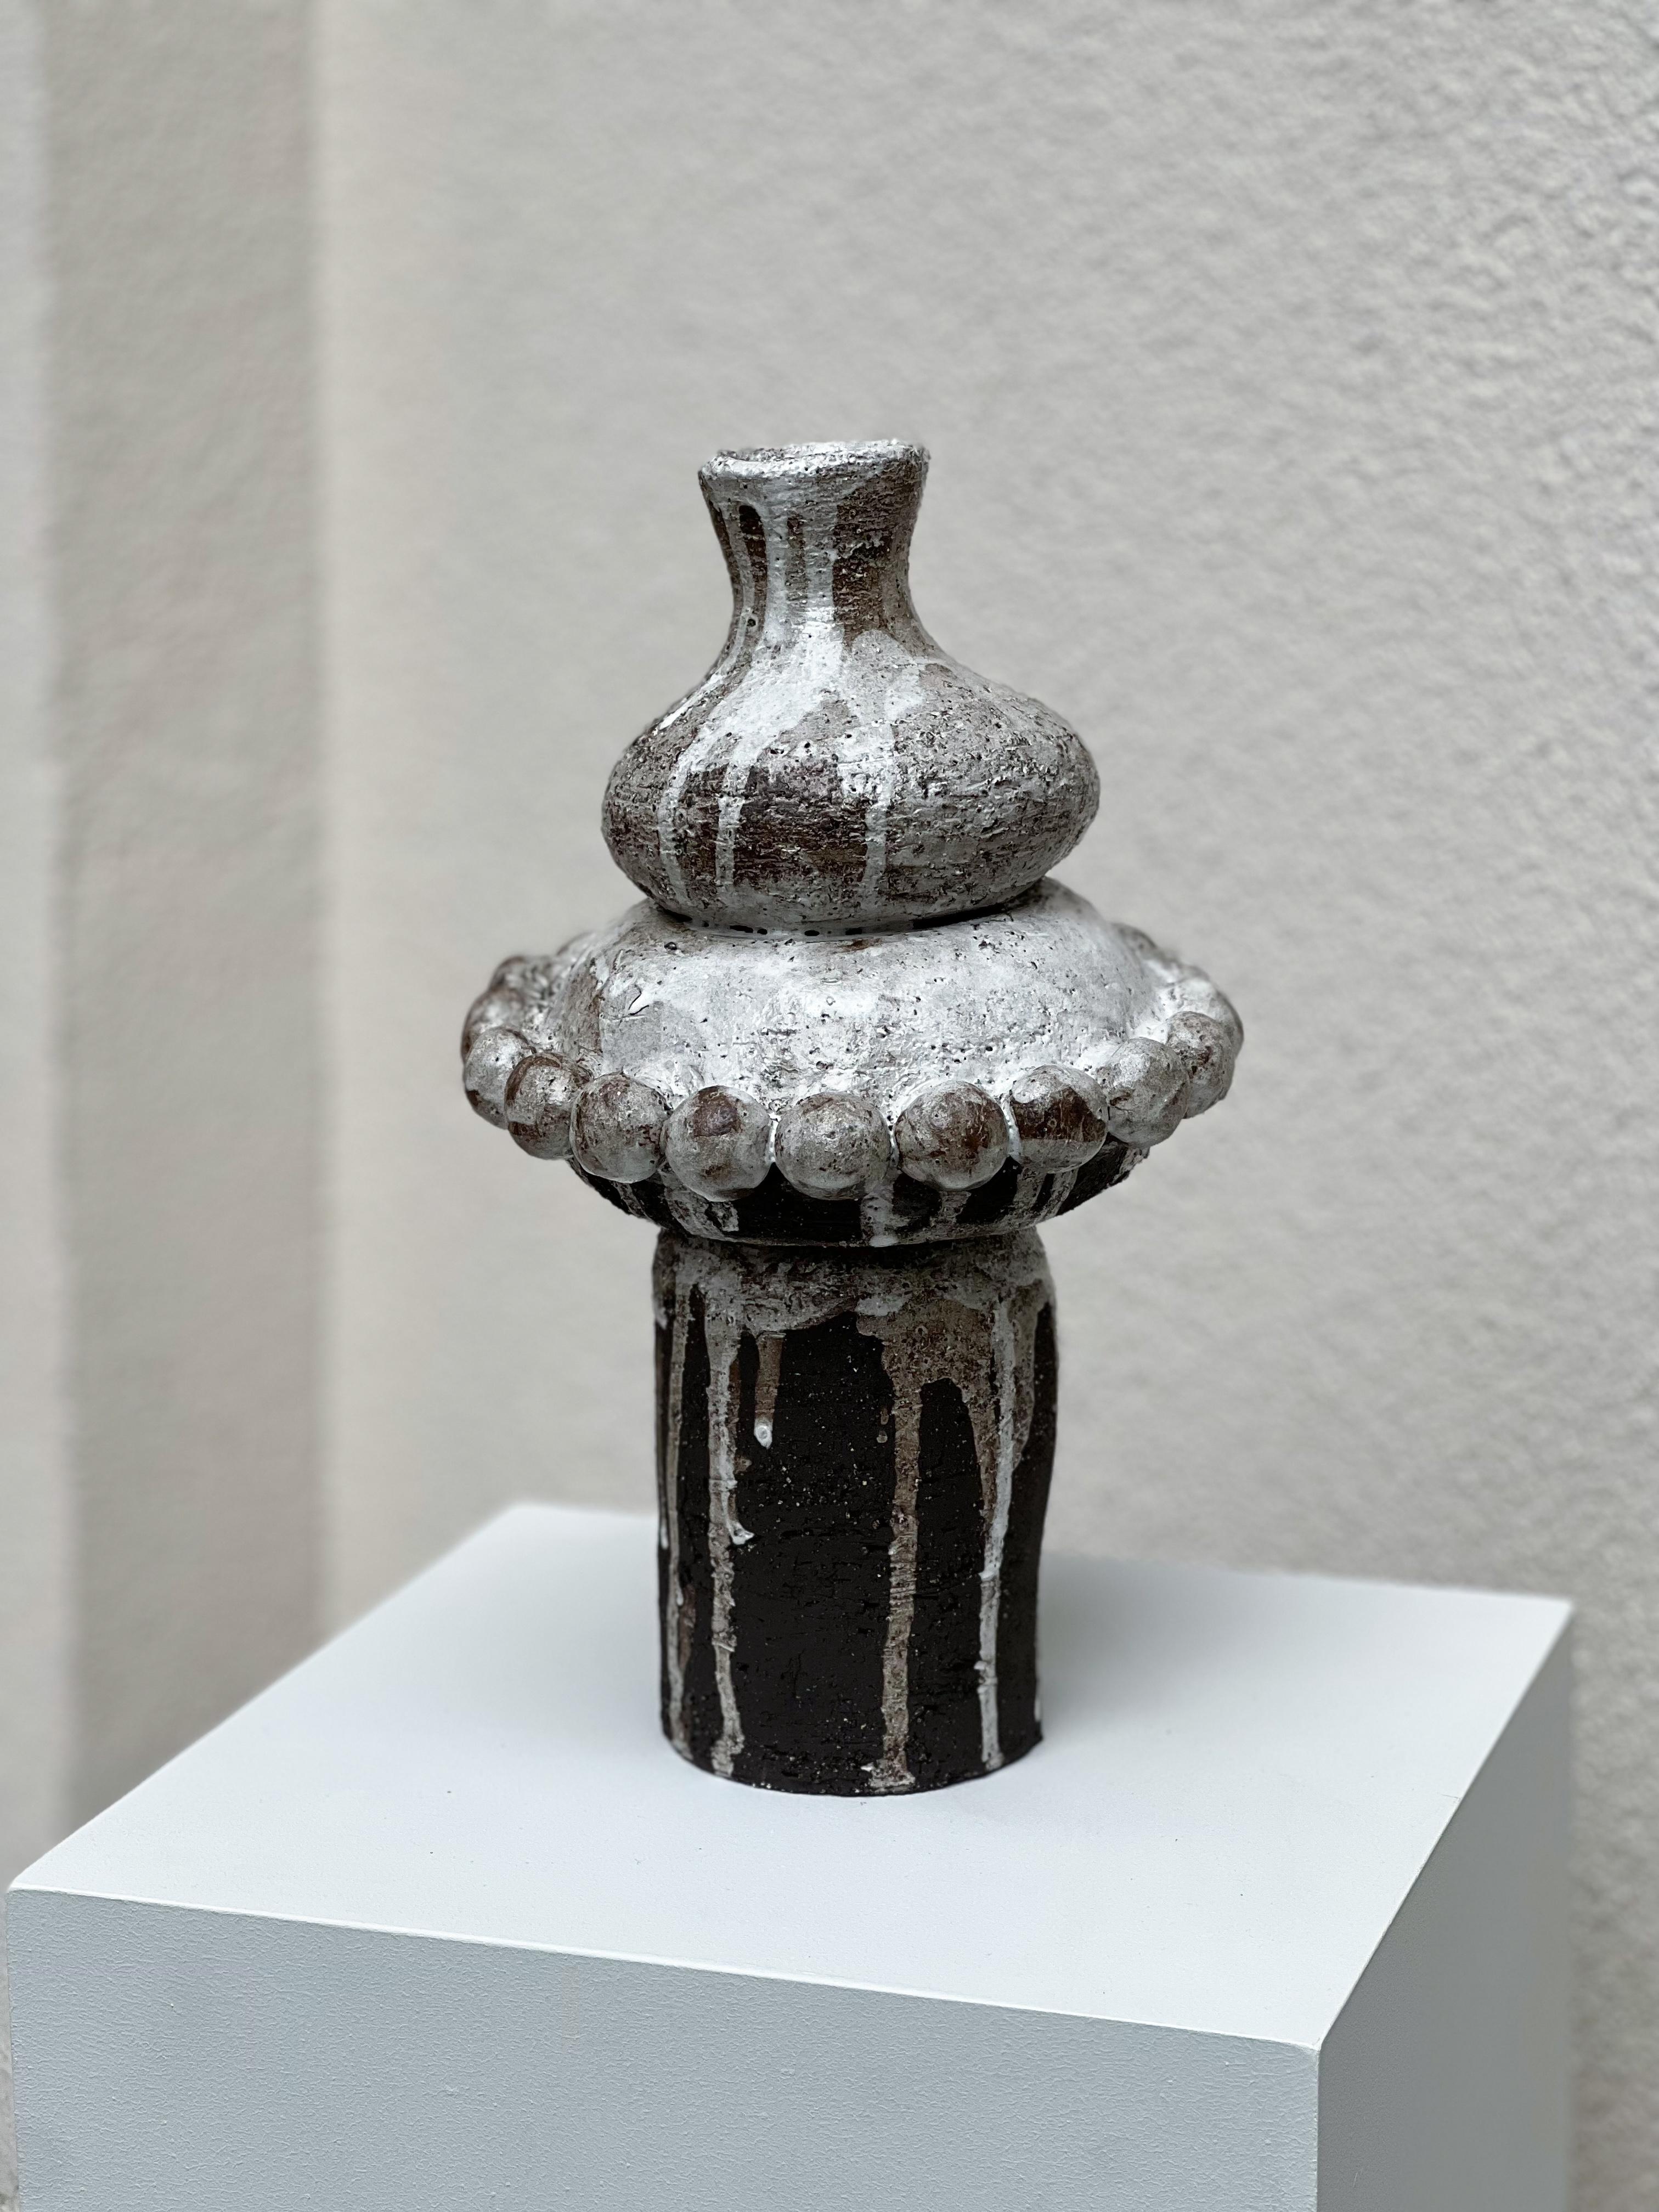 Anatolische Vase 2 von Güler Elçi
Abmessungen: B 20,3 x T 20,3 x H 30 cm.
MATERIALIEN: Steingut Keramik.

Güler Elçi ist eine in Istanbul ansässige Keramikkünstlerin. Vor dem Hintergrund ihrer Karriere als Ingenieurin betrachtet sie Keramik als